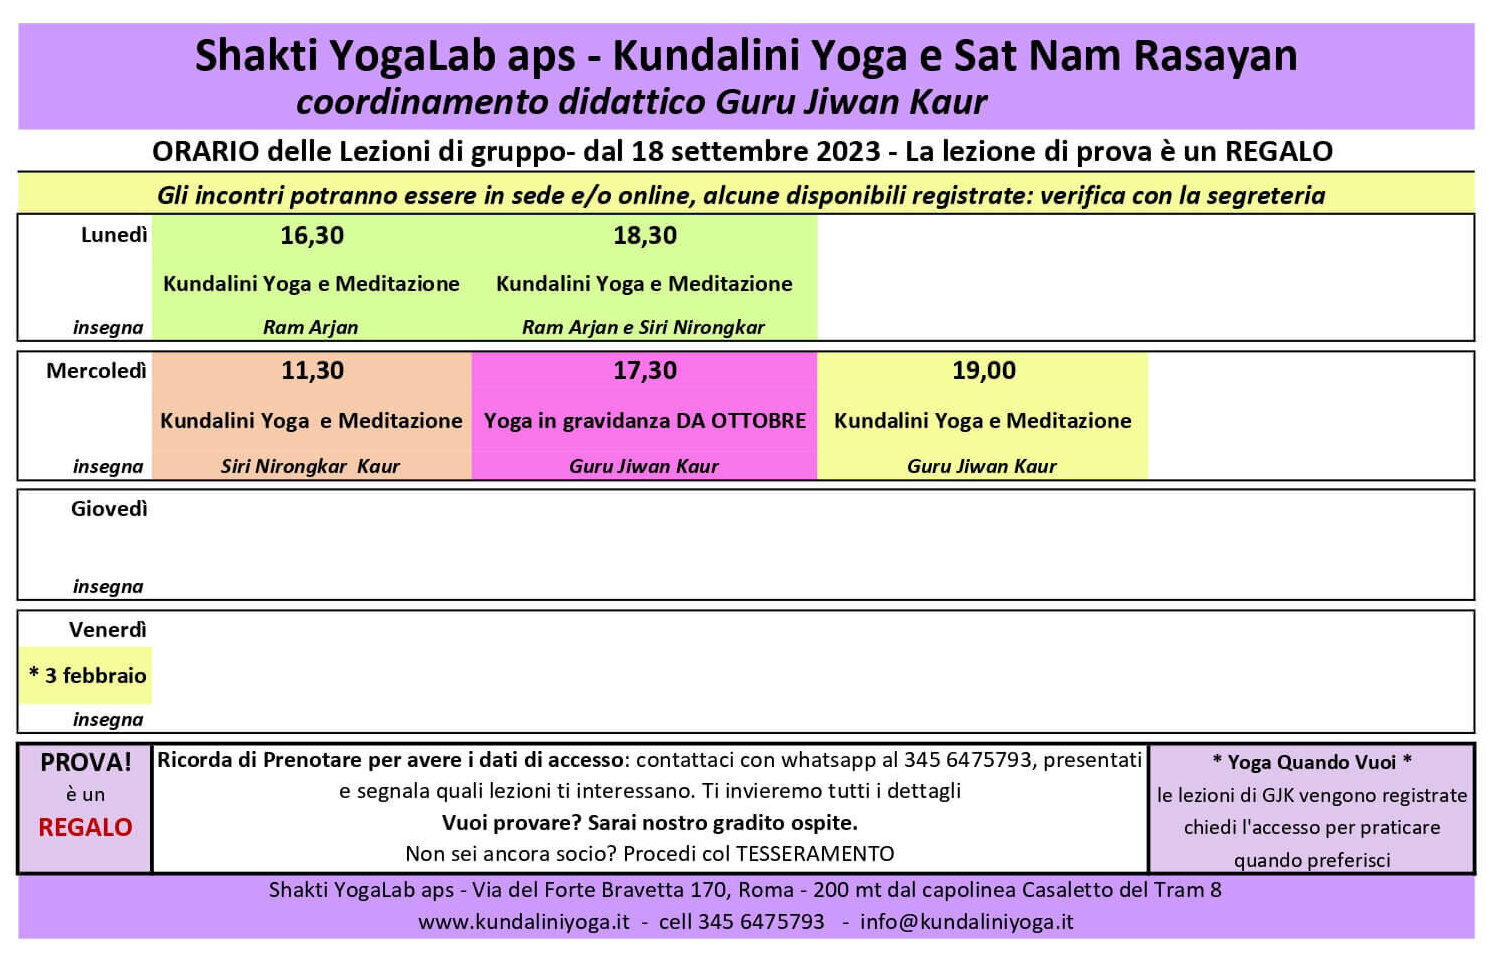 Orari delle attività 2024 - Shakti YogaLab Kundalini Yoga - Monteverde  Bravetta Casaletto Roma